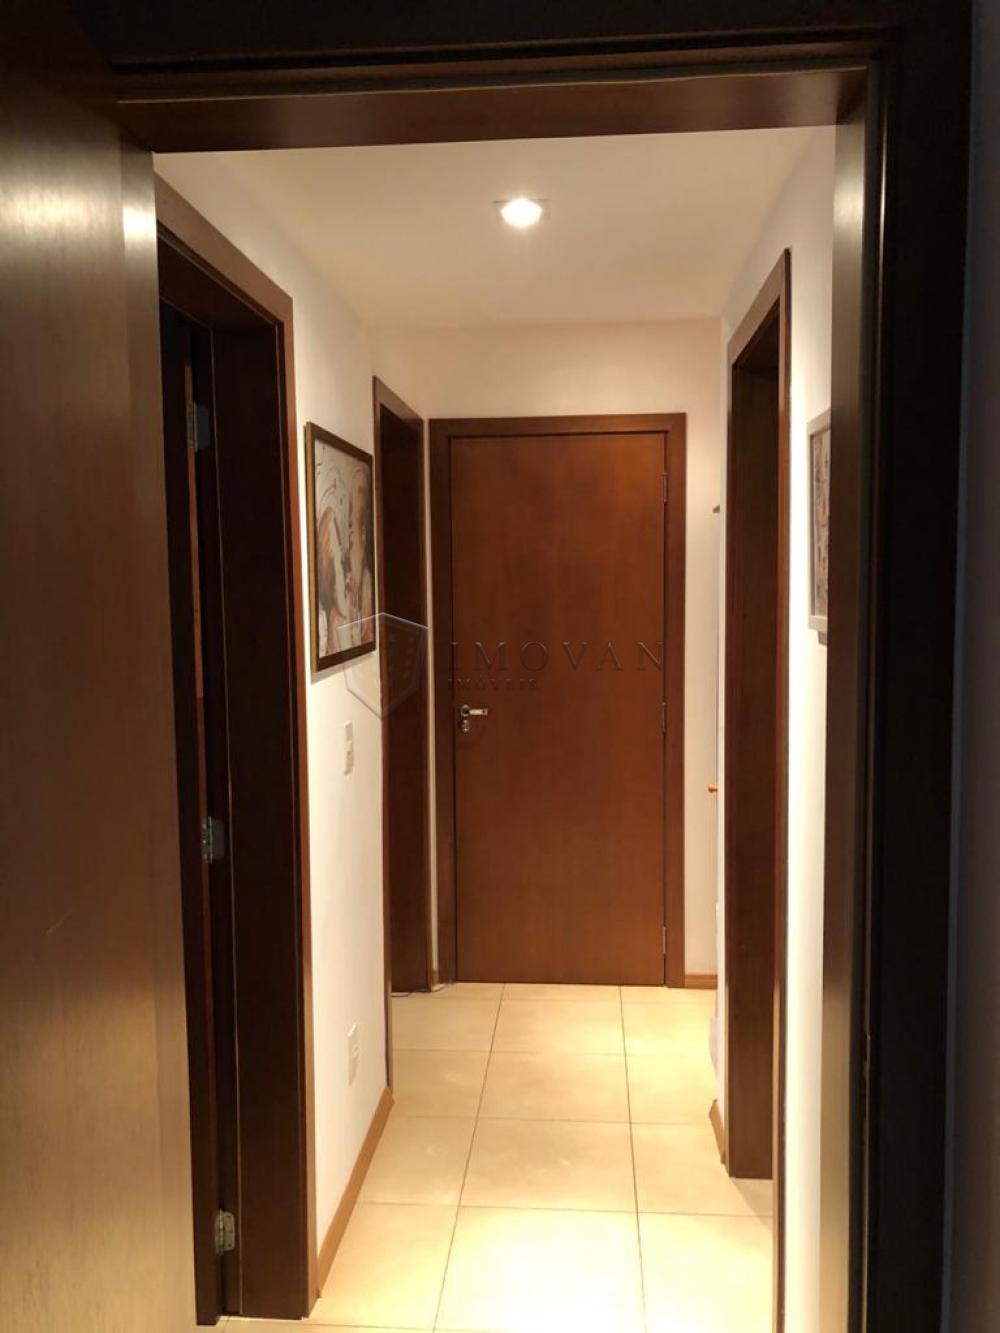 Comprar Apartamento / Padrão em Ribeirão Preto R$ 850.000,00 - Foto 4